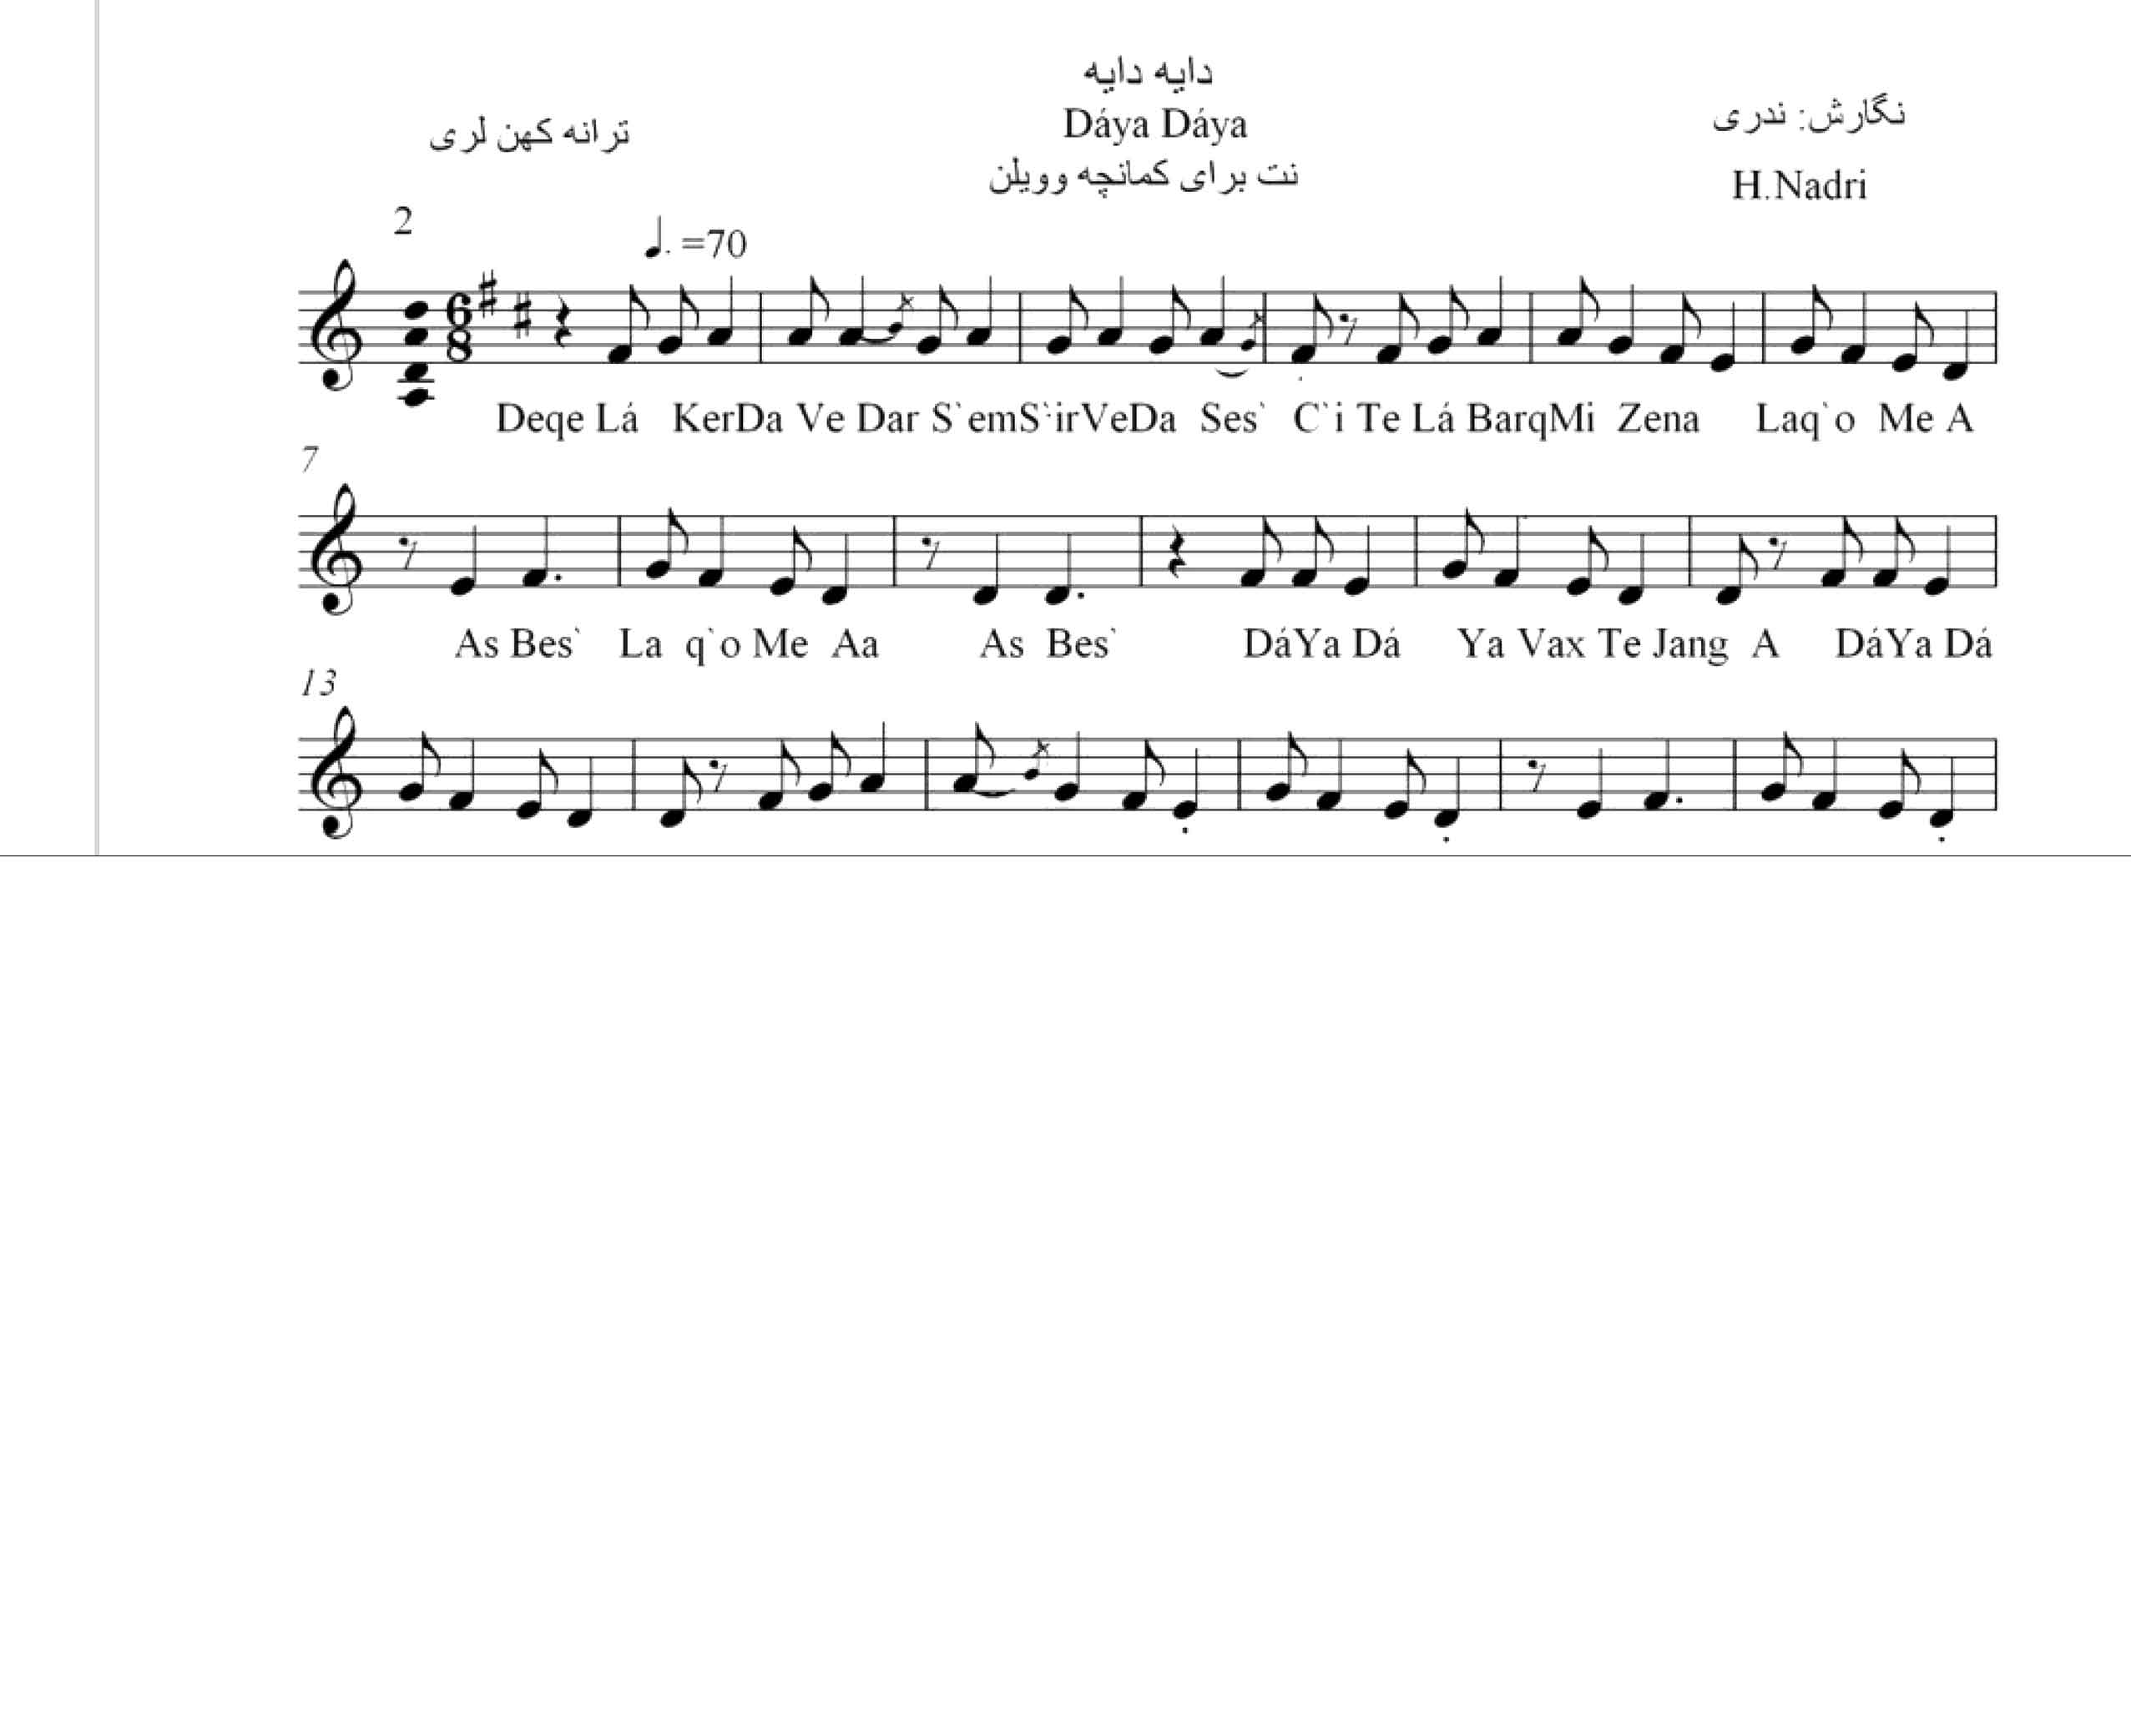 نت آهنگ دایه دایه وقت جنگه محلی لری حجت اله ندری قابل اجرا با کمانچه و دیگر سازها